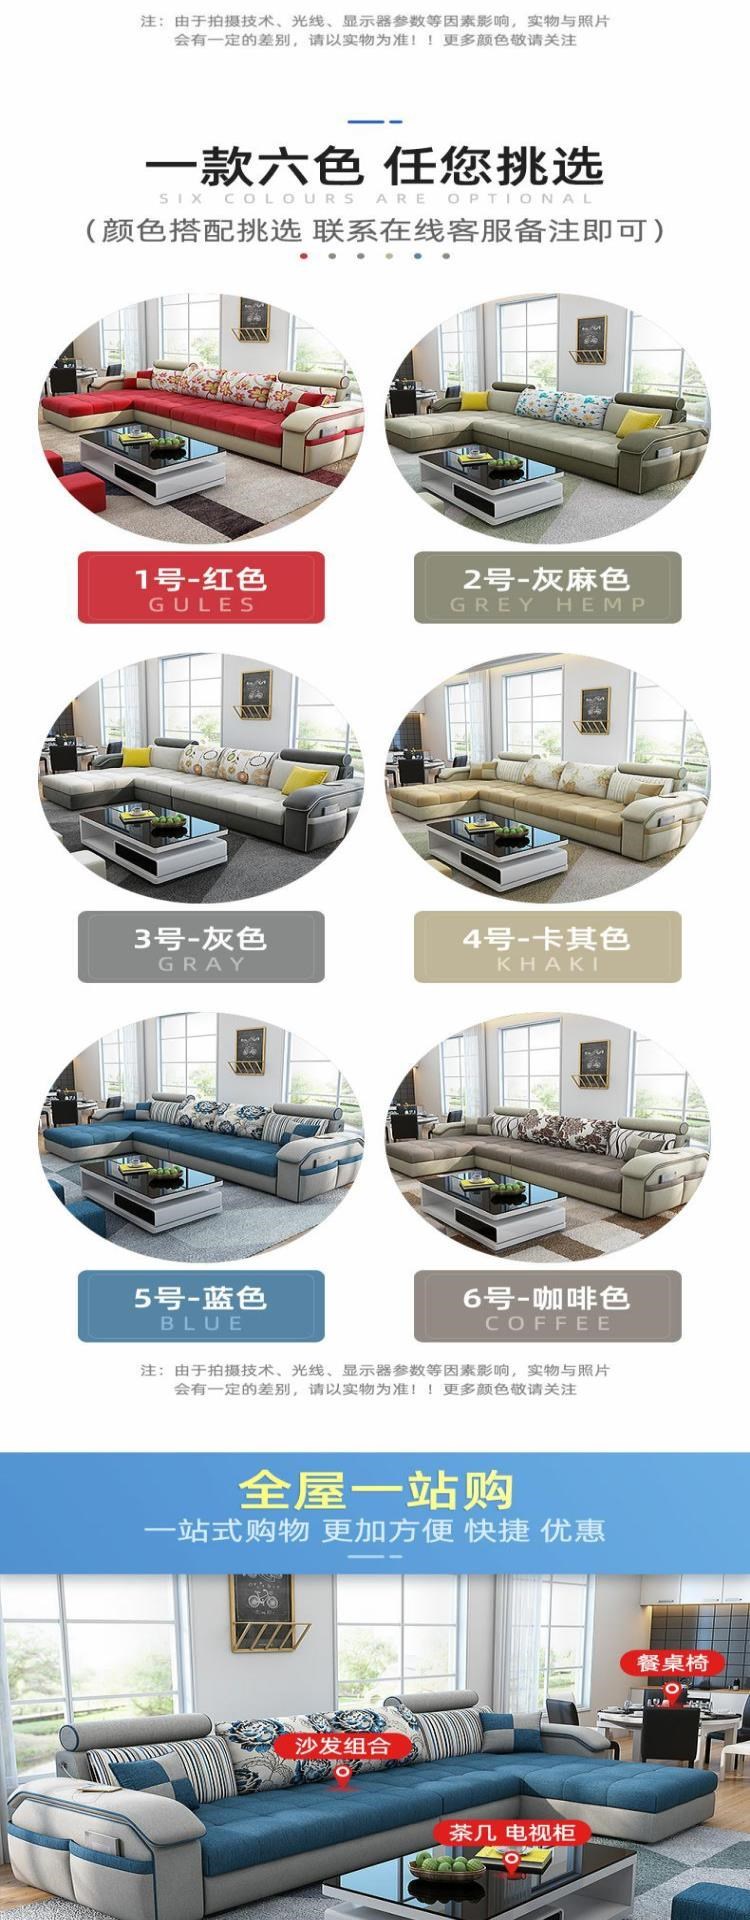 Ghế sofa vải công nghệ dùng một lần đơn giản hiện đại nội thất phòng khách chung cư nhỏ lắp ráp hoàn chỉnh có thể tháo rời và giặt được kết hợp ba góc - Ghế sô pha